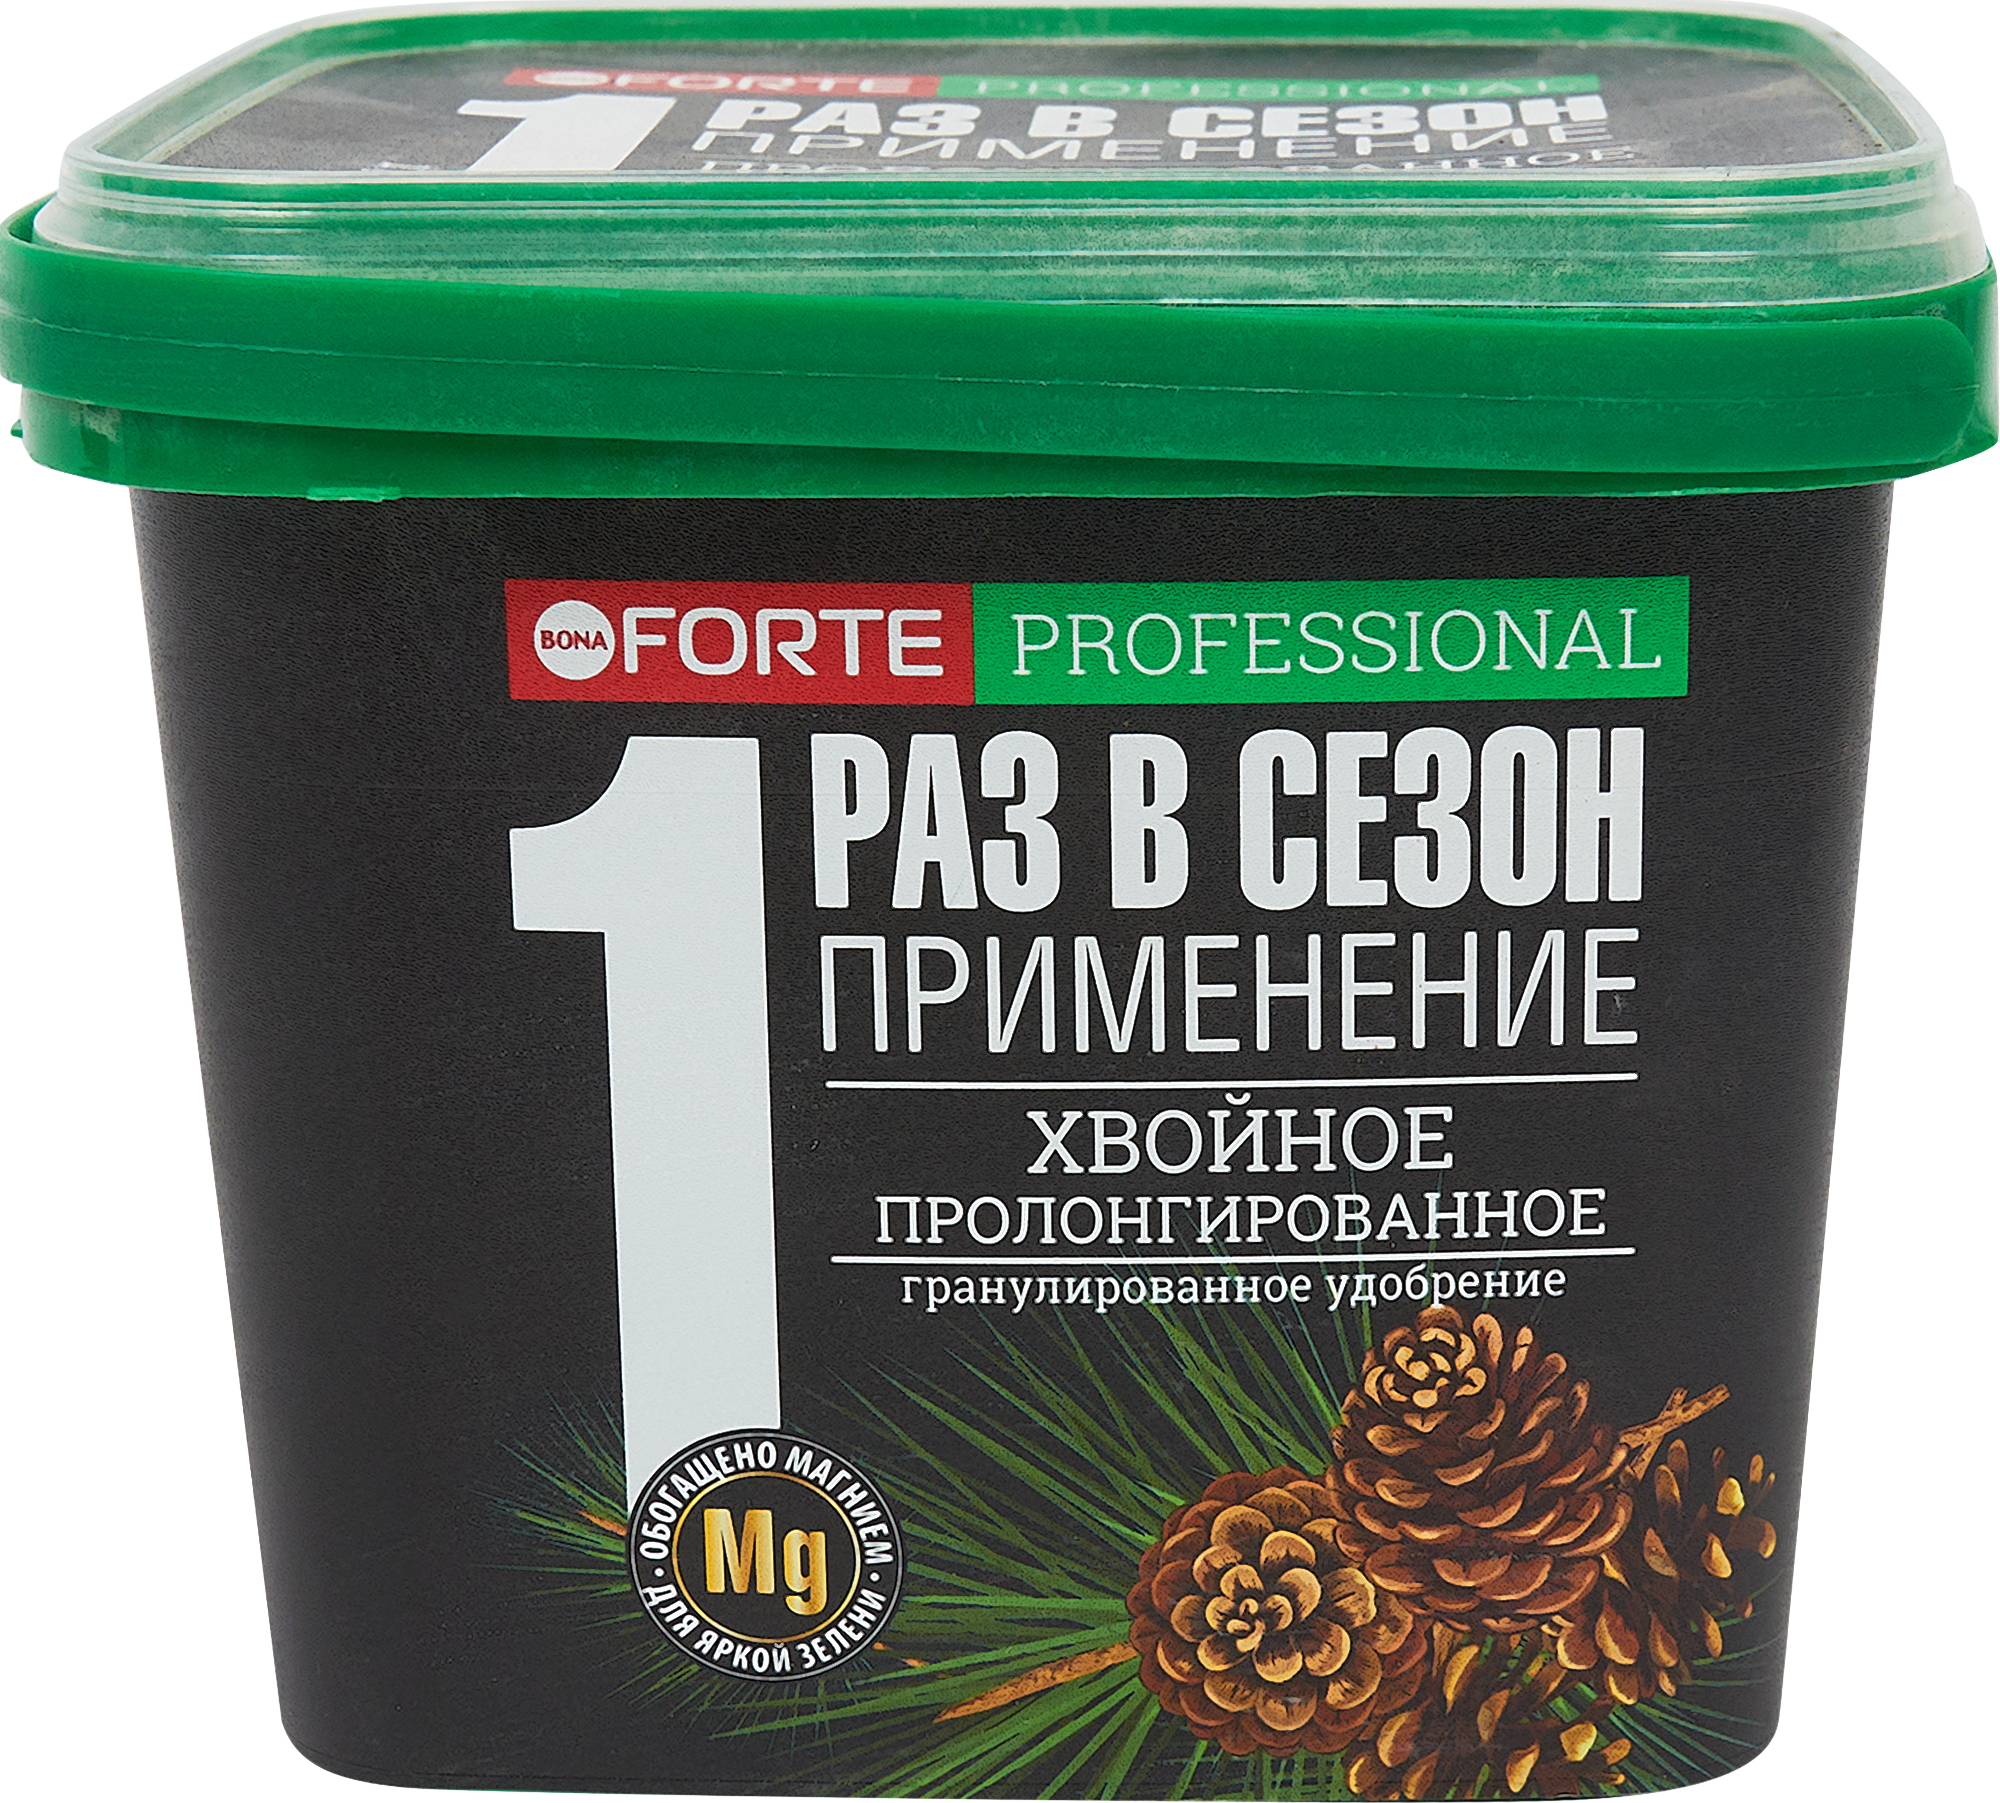 Удобрение Bona Forte для хвойных с кремнием, 1л в Москве – купить по низкойцене в интернет-магазине Леруа Мерлен